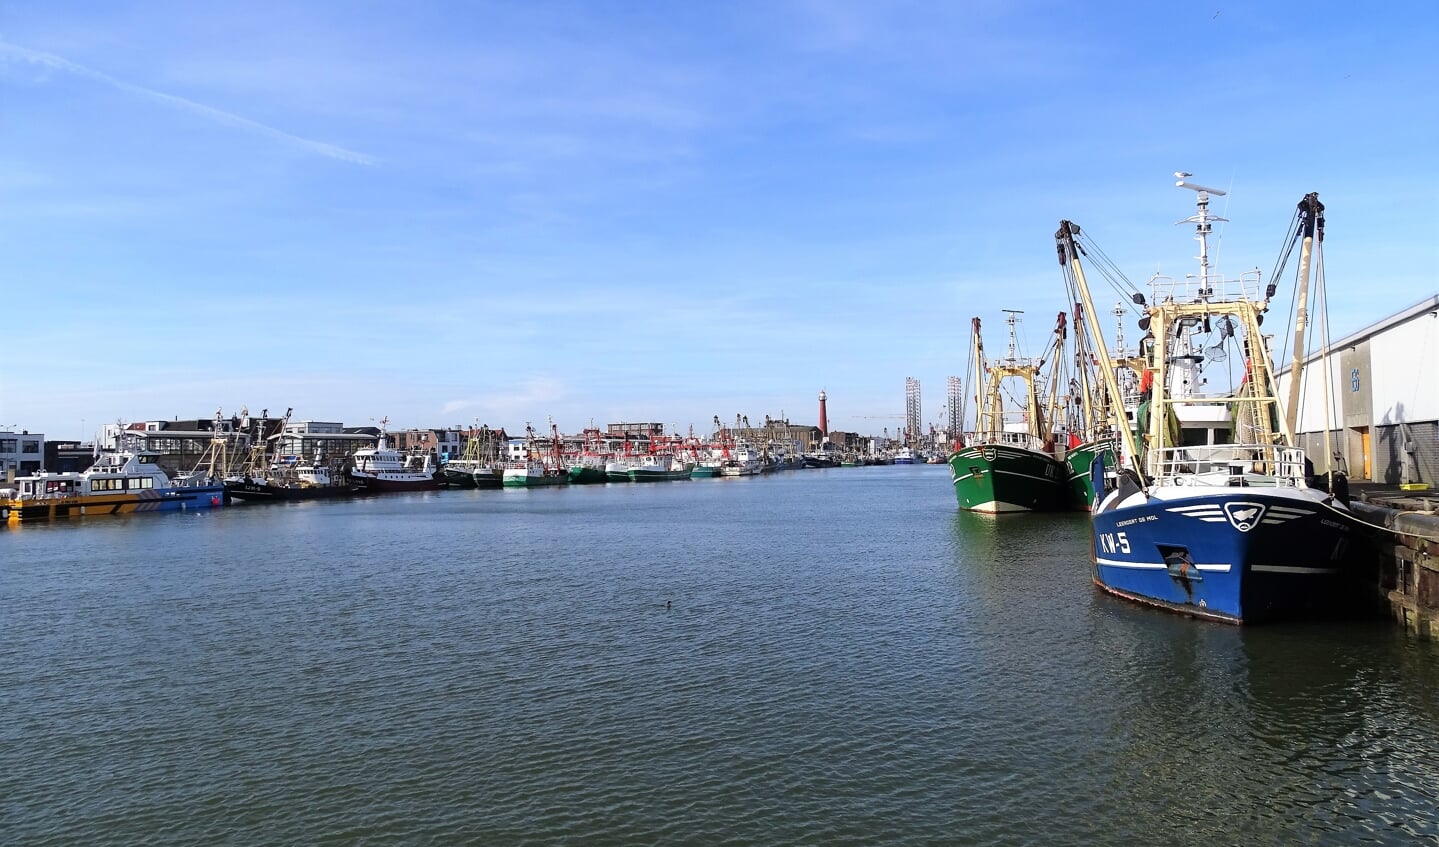 De haven van IJmuiden (niet de plek waar het lek was).